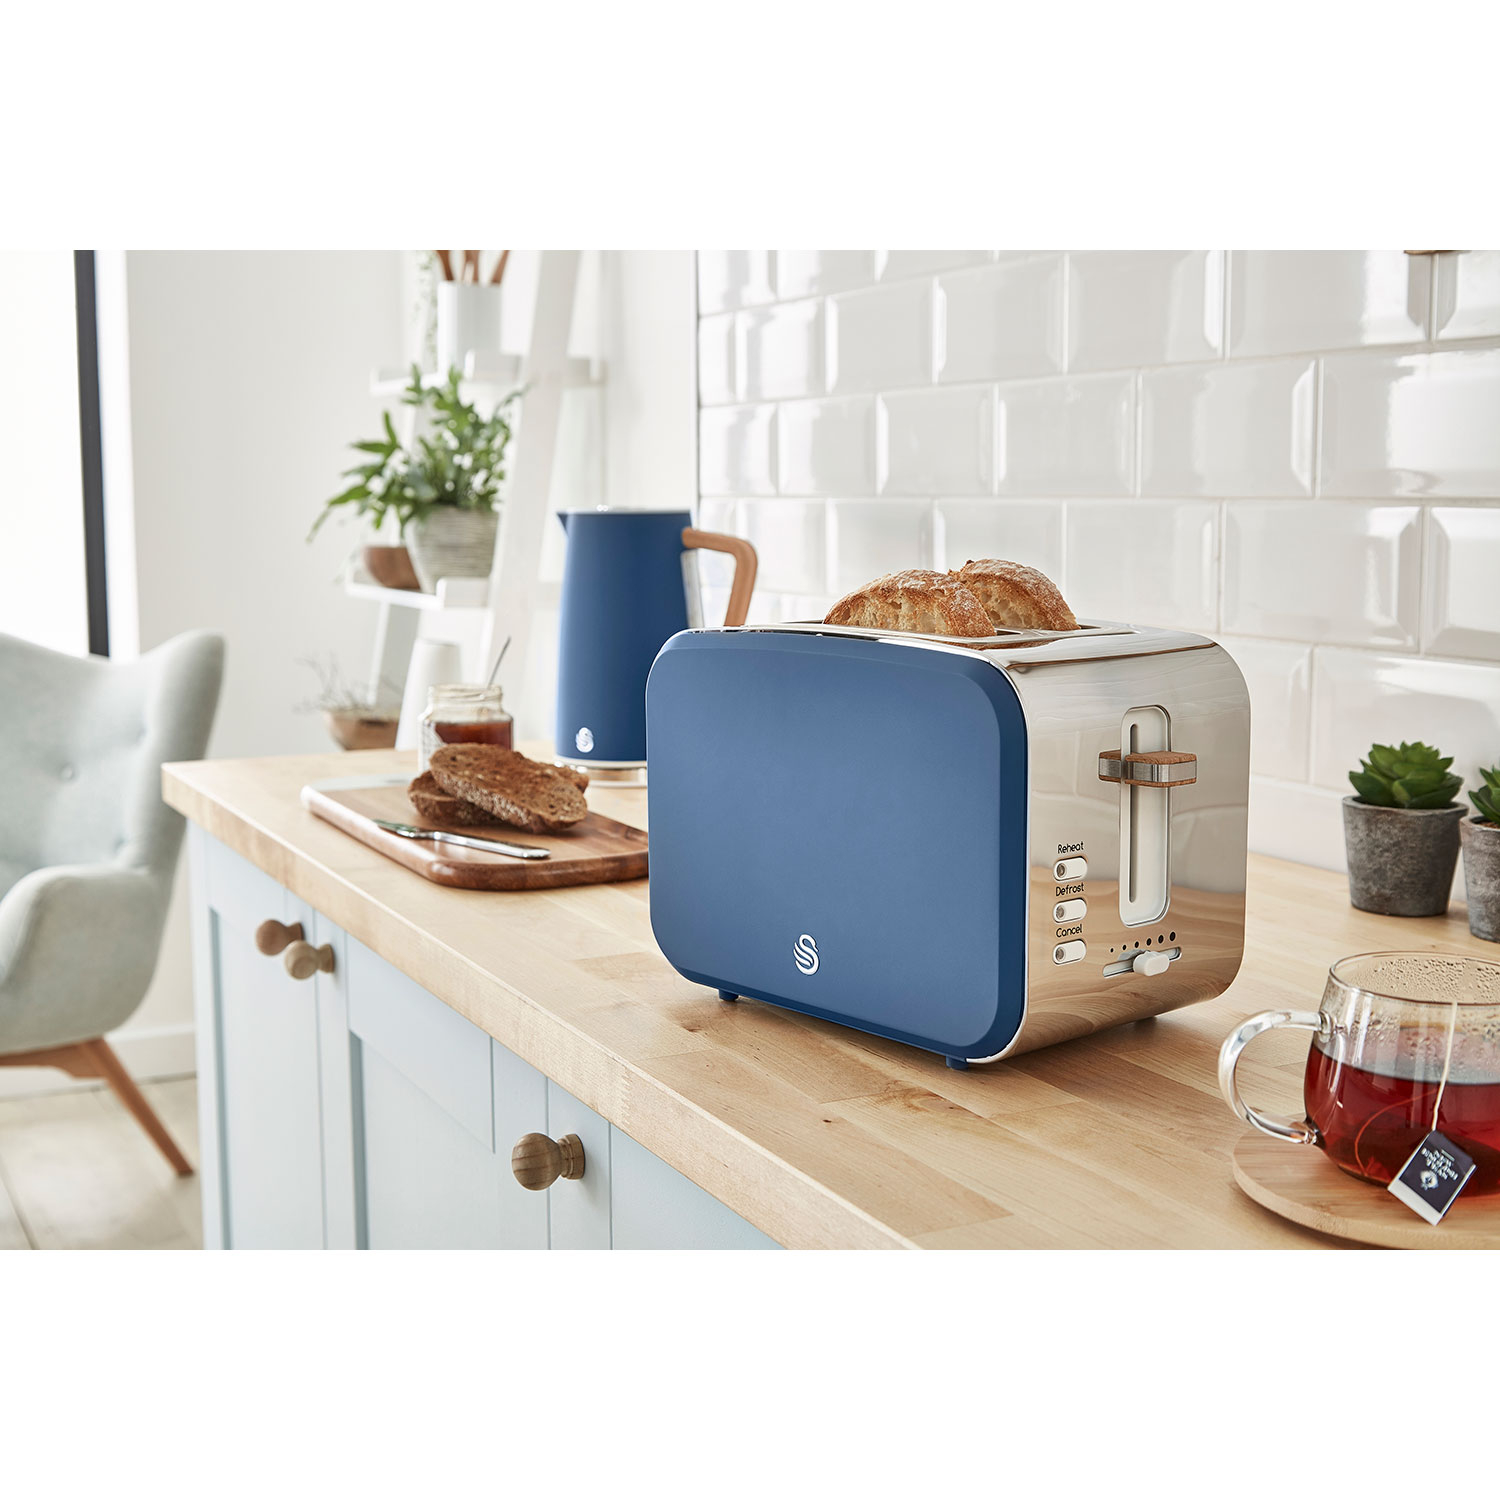 (2200 und Wasserkocher STP2090BLUNEU Blau SWAN Watt, Nordic Set Schlitze: 2) Toaster